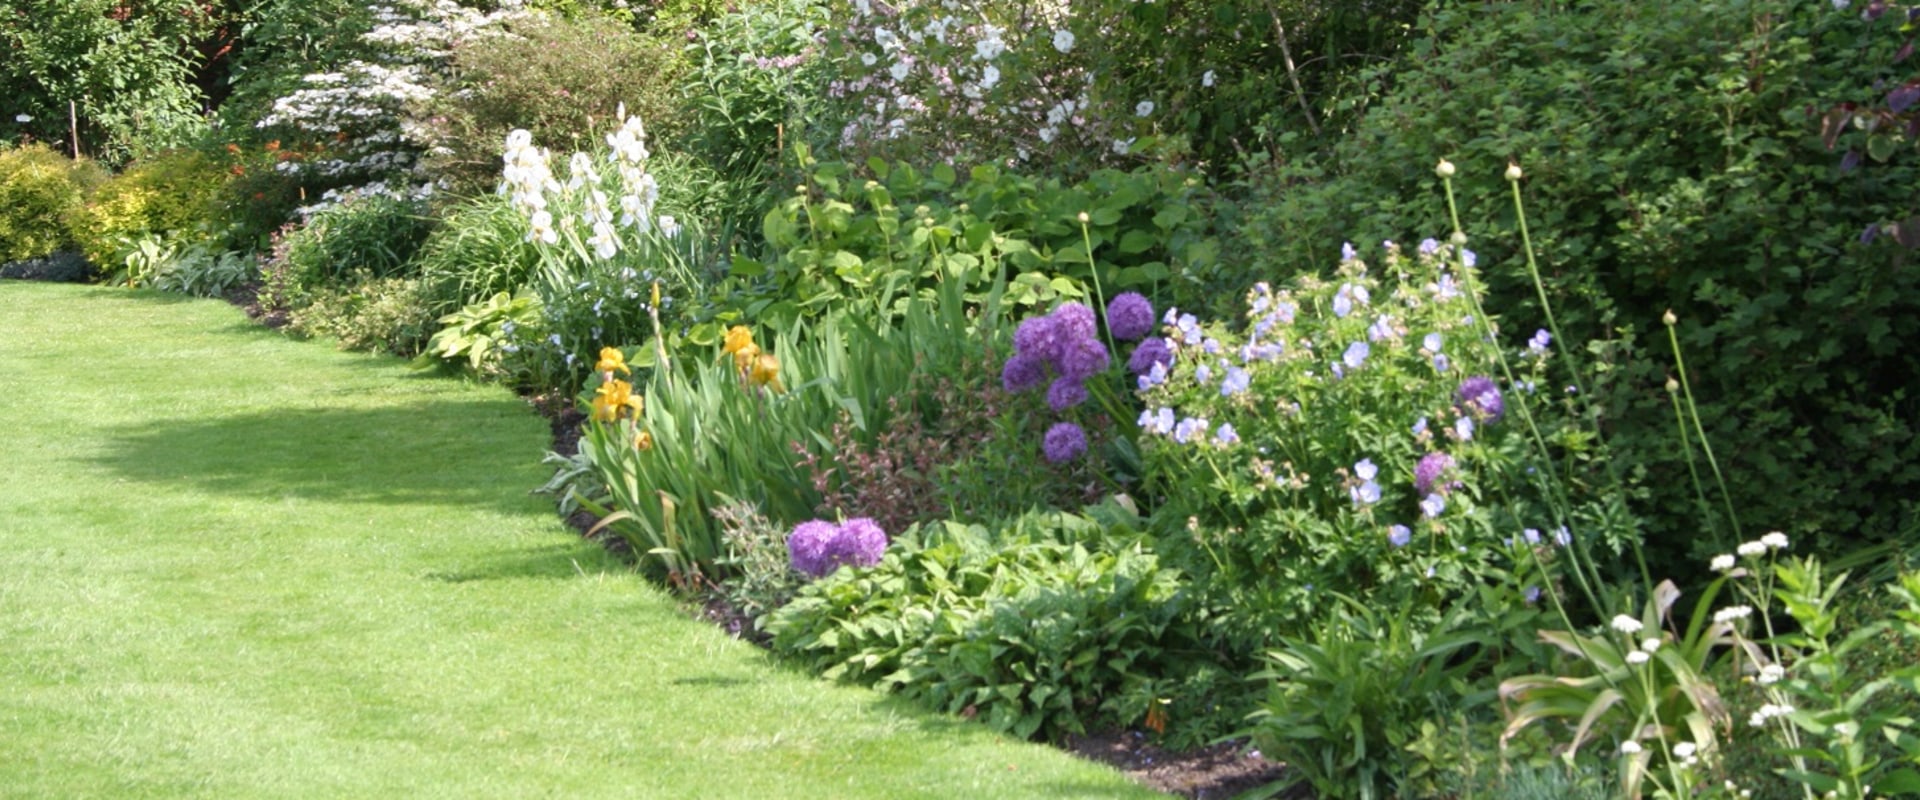 Choisir un emplacement pour la conception de votre jardin de fleurs